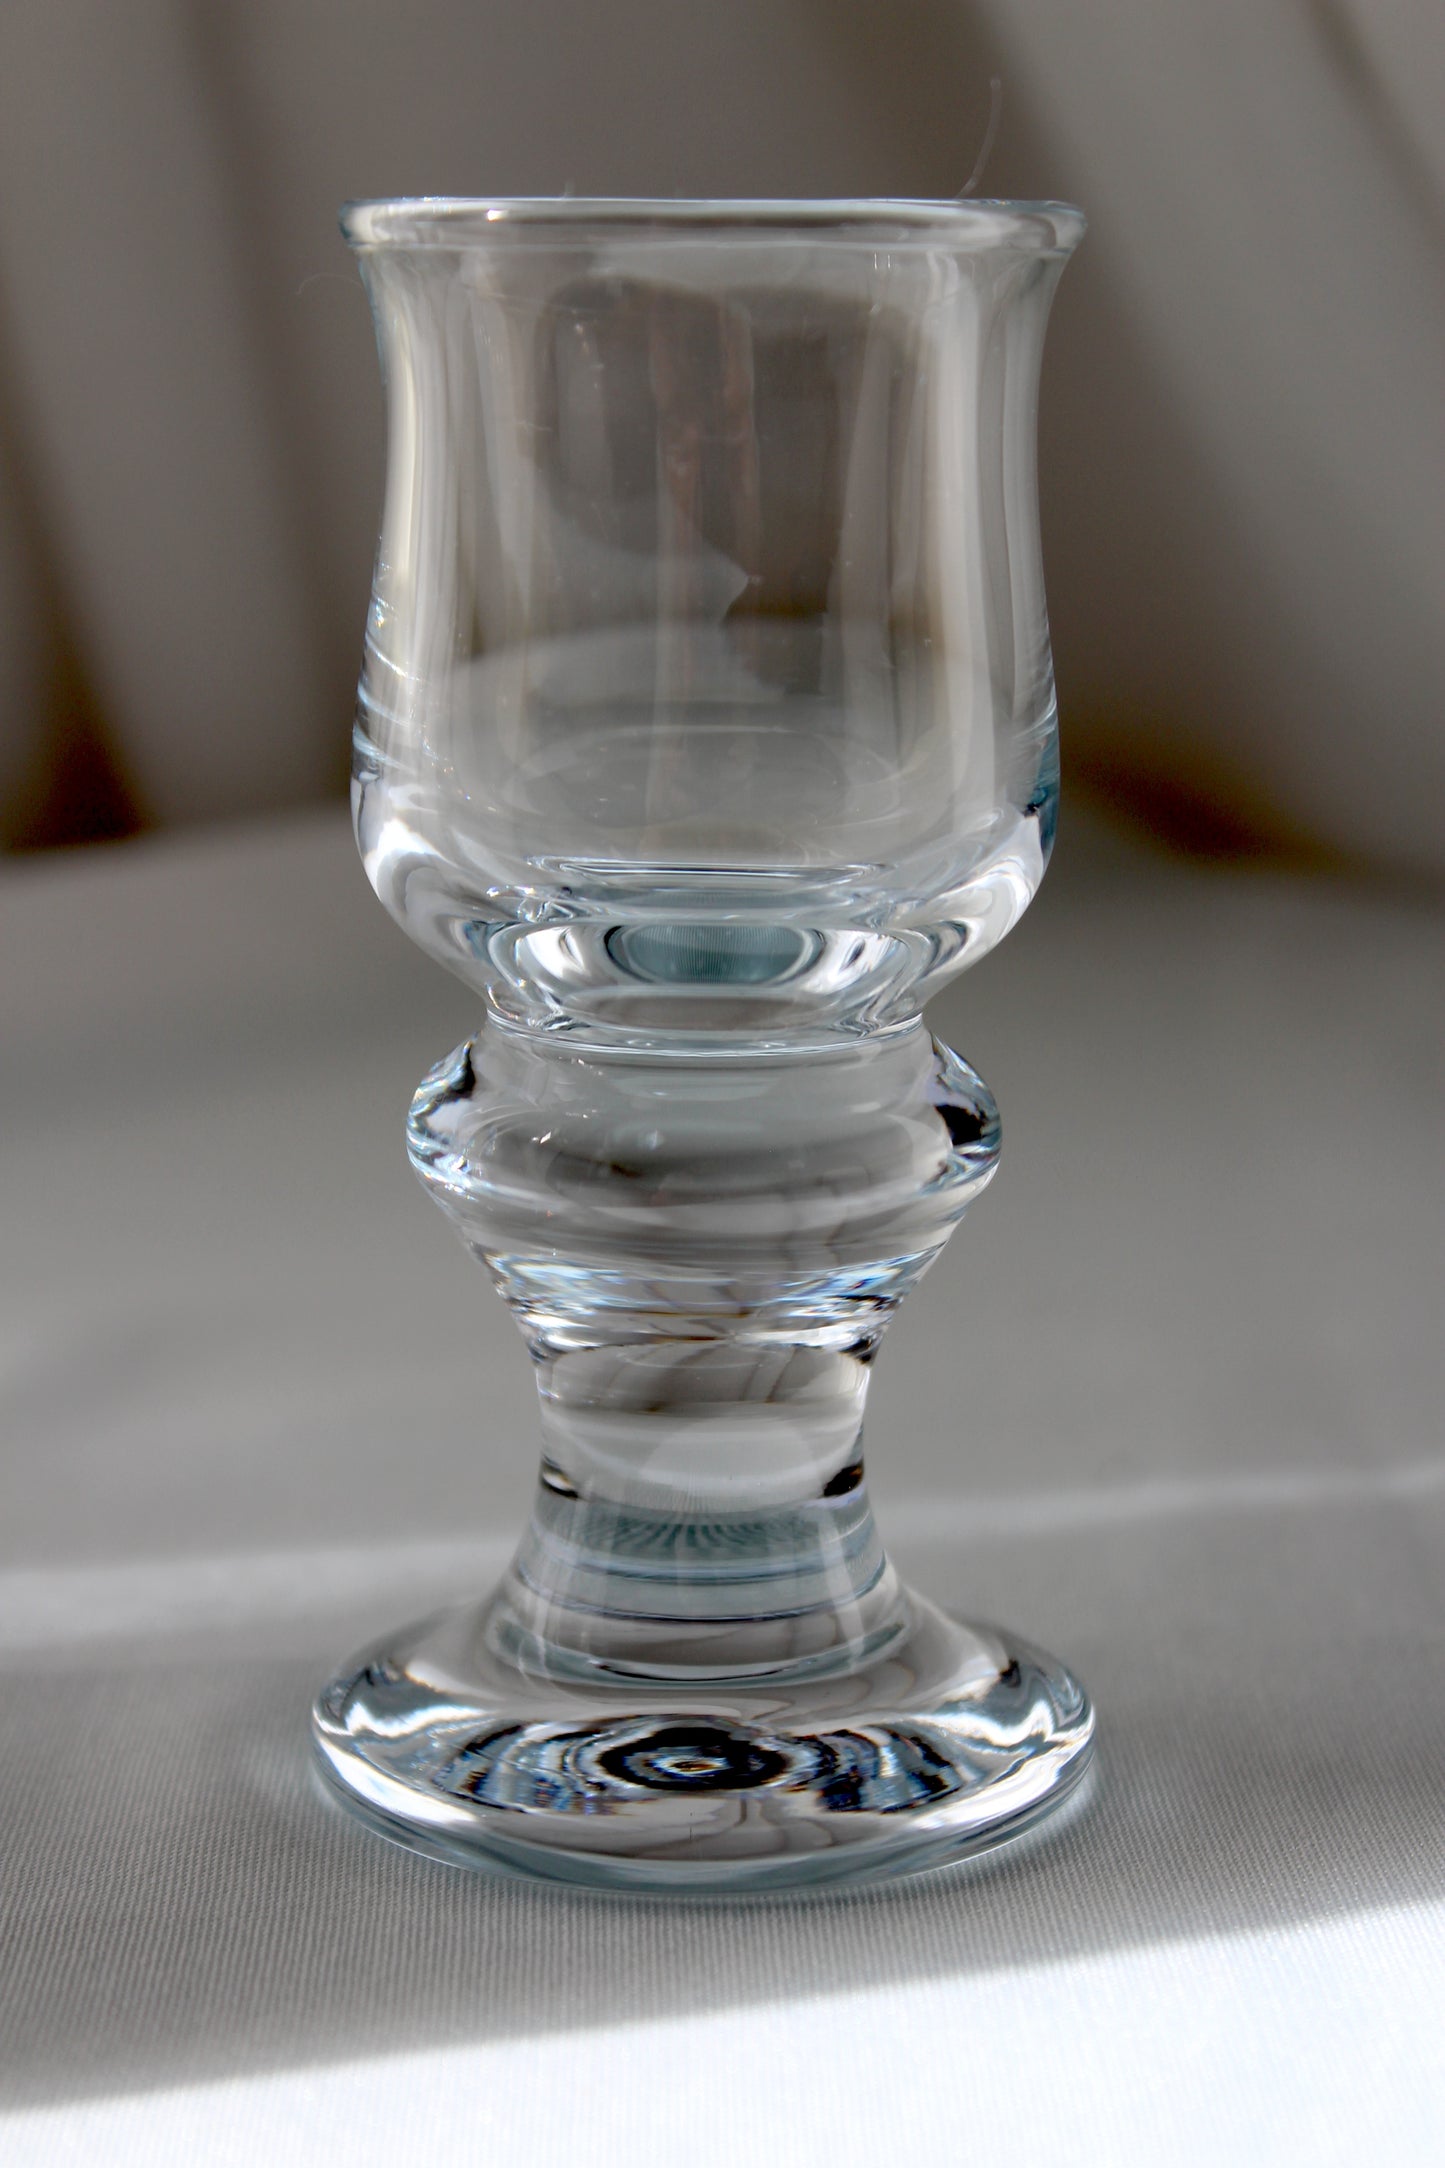 Holmegaard Tivoli - Schnapps glass